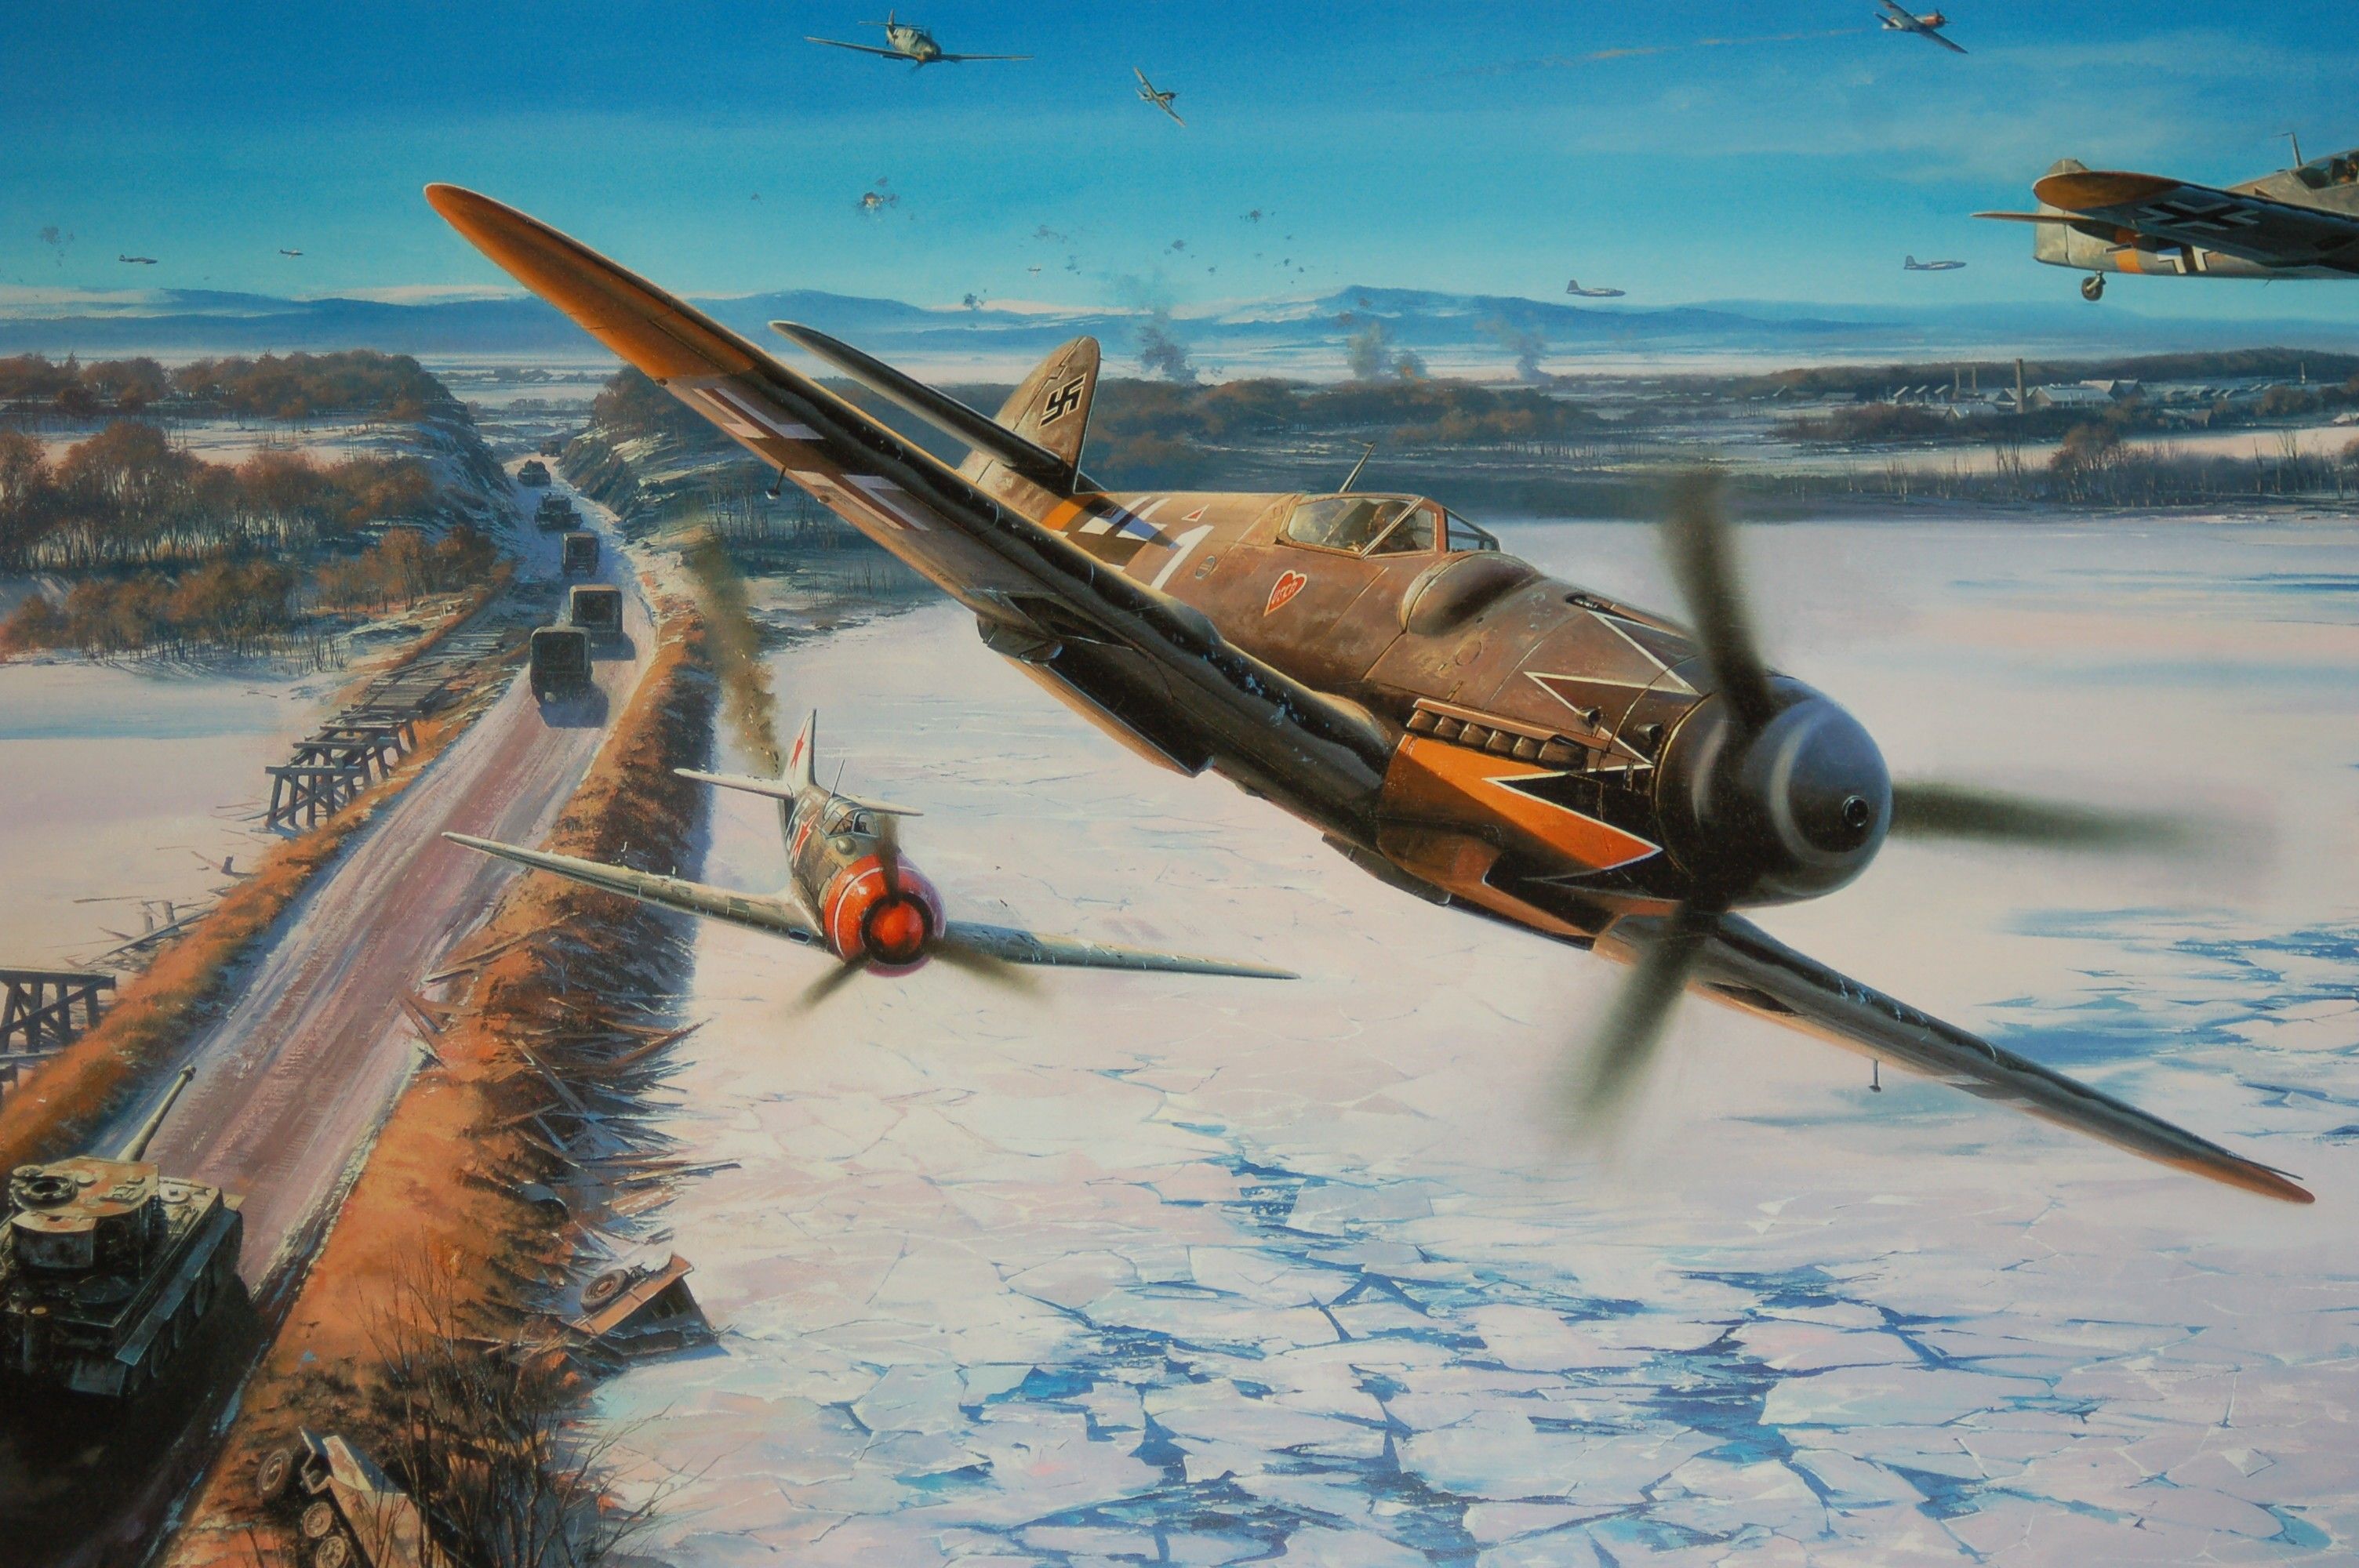 Messerschmitt, Messerschmitt Bf Luftwaffe, Aircraft, Military